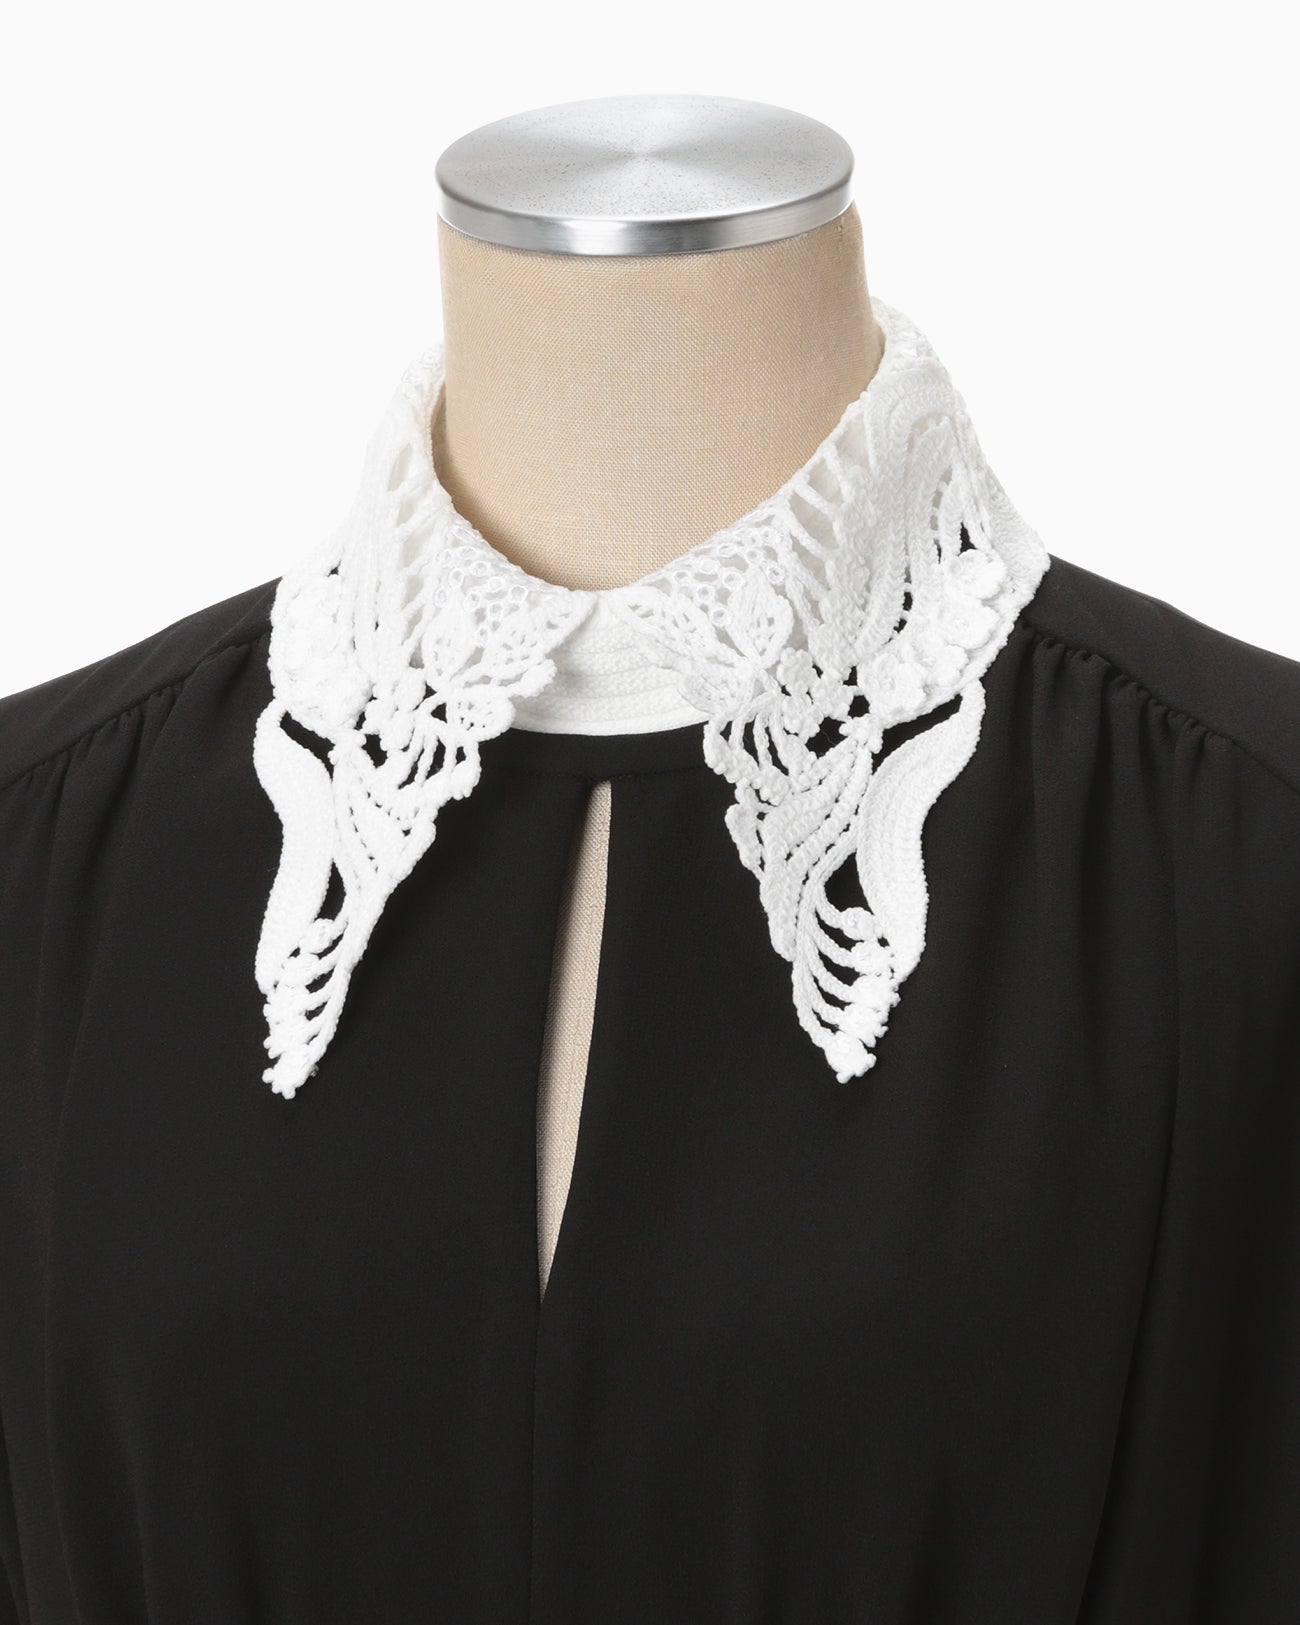 Back Satin Crepe Georgette Embroidered Collar Flared Dress - black